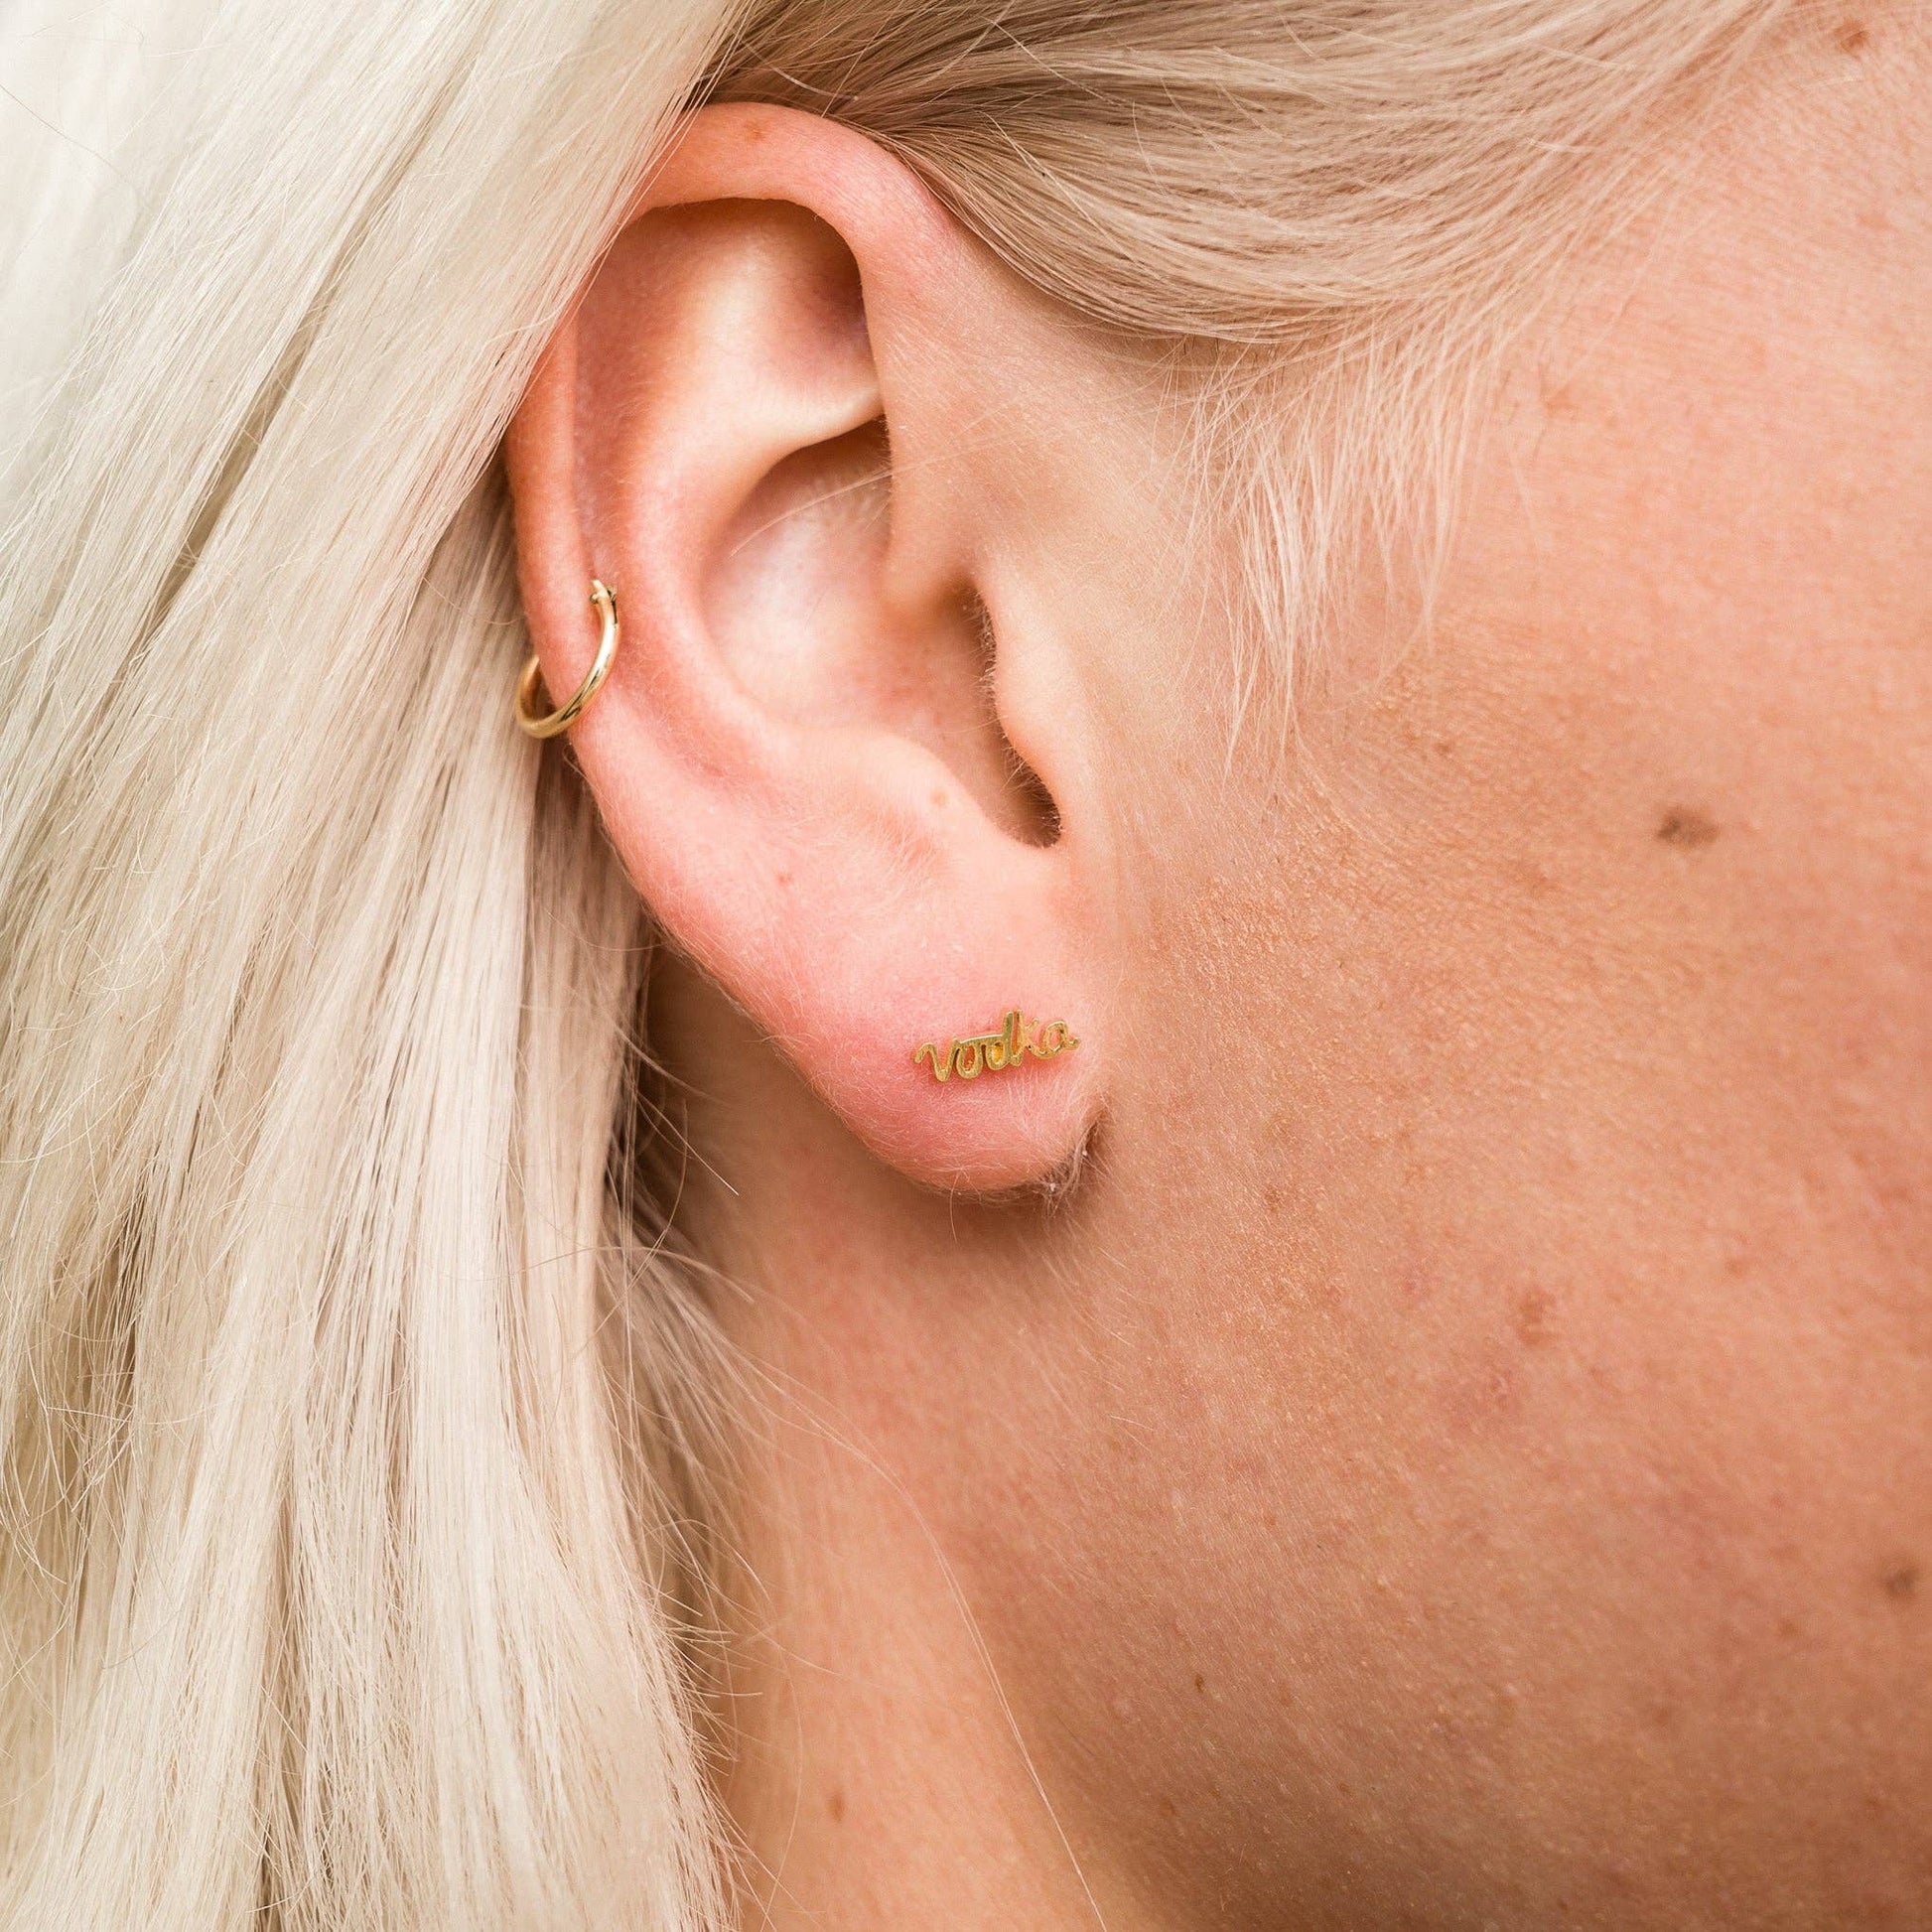 Single 14k gold plated stud earring -- reads "vodka" in handwritten script. Shown on ear for scale 